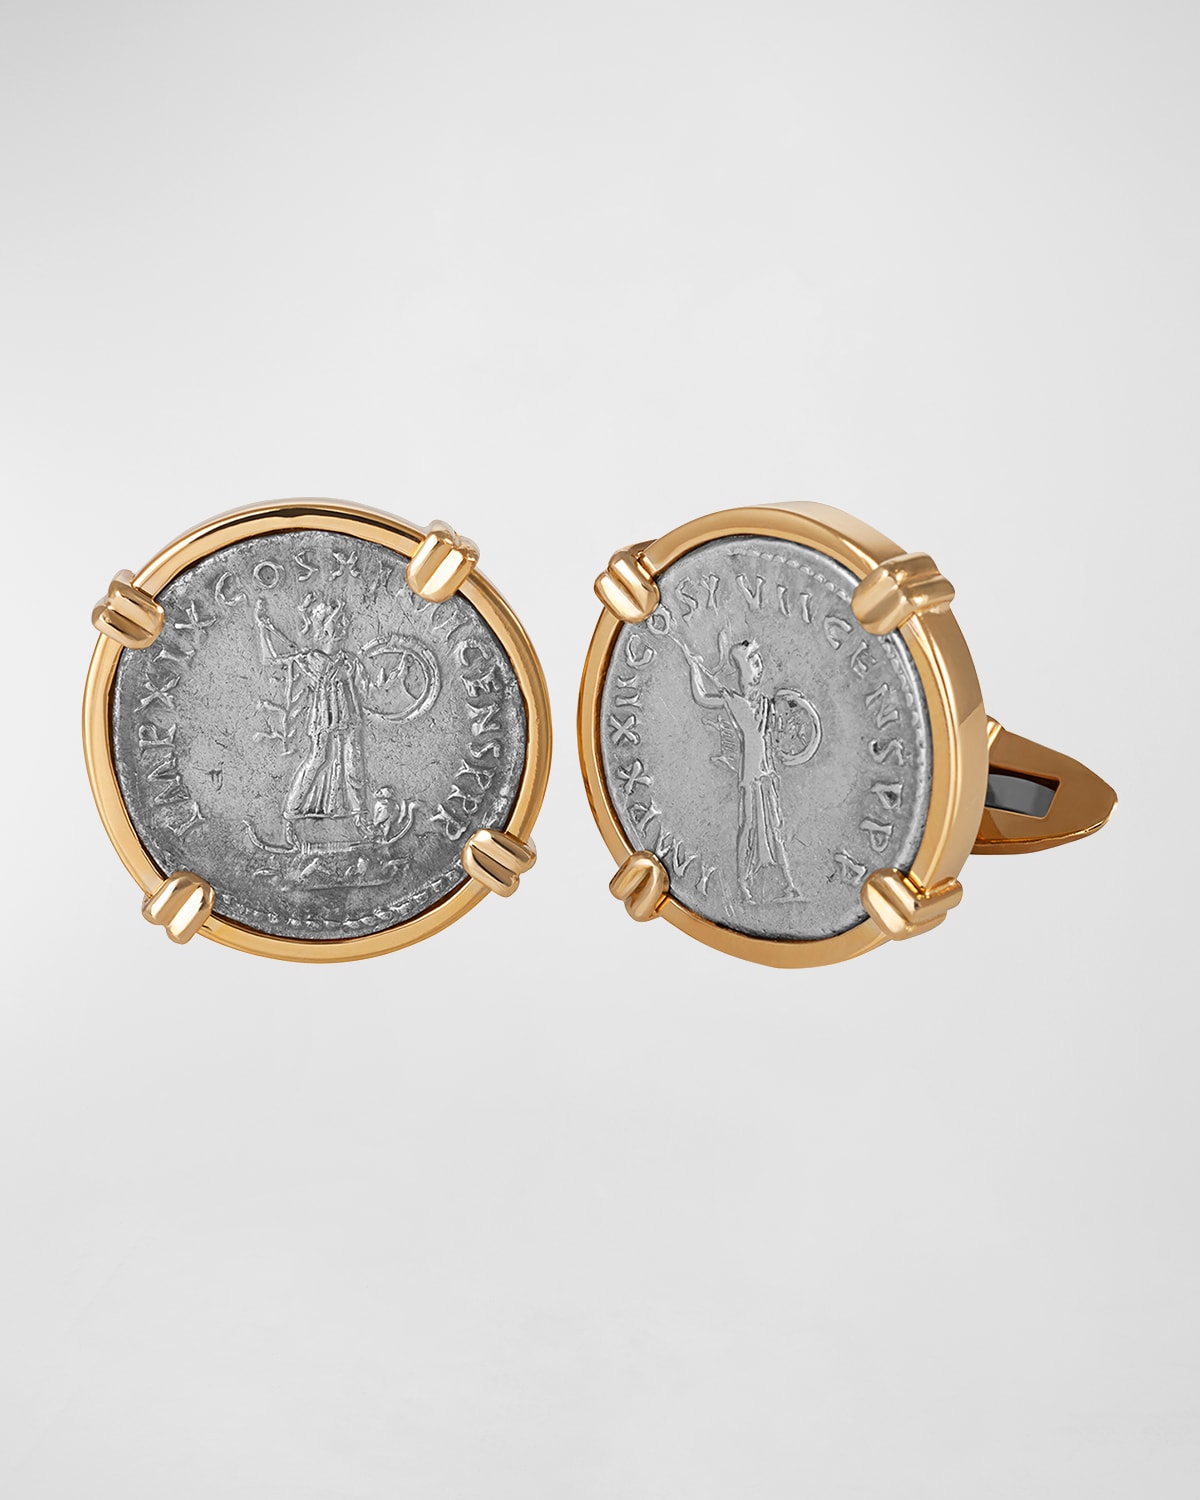 Shop Jorge Adeler Men's Gods & Heroes 18k Yellow Gold Ancient Minerva Coin Cufflinks